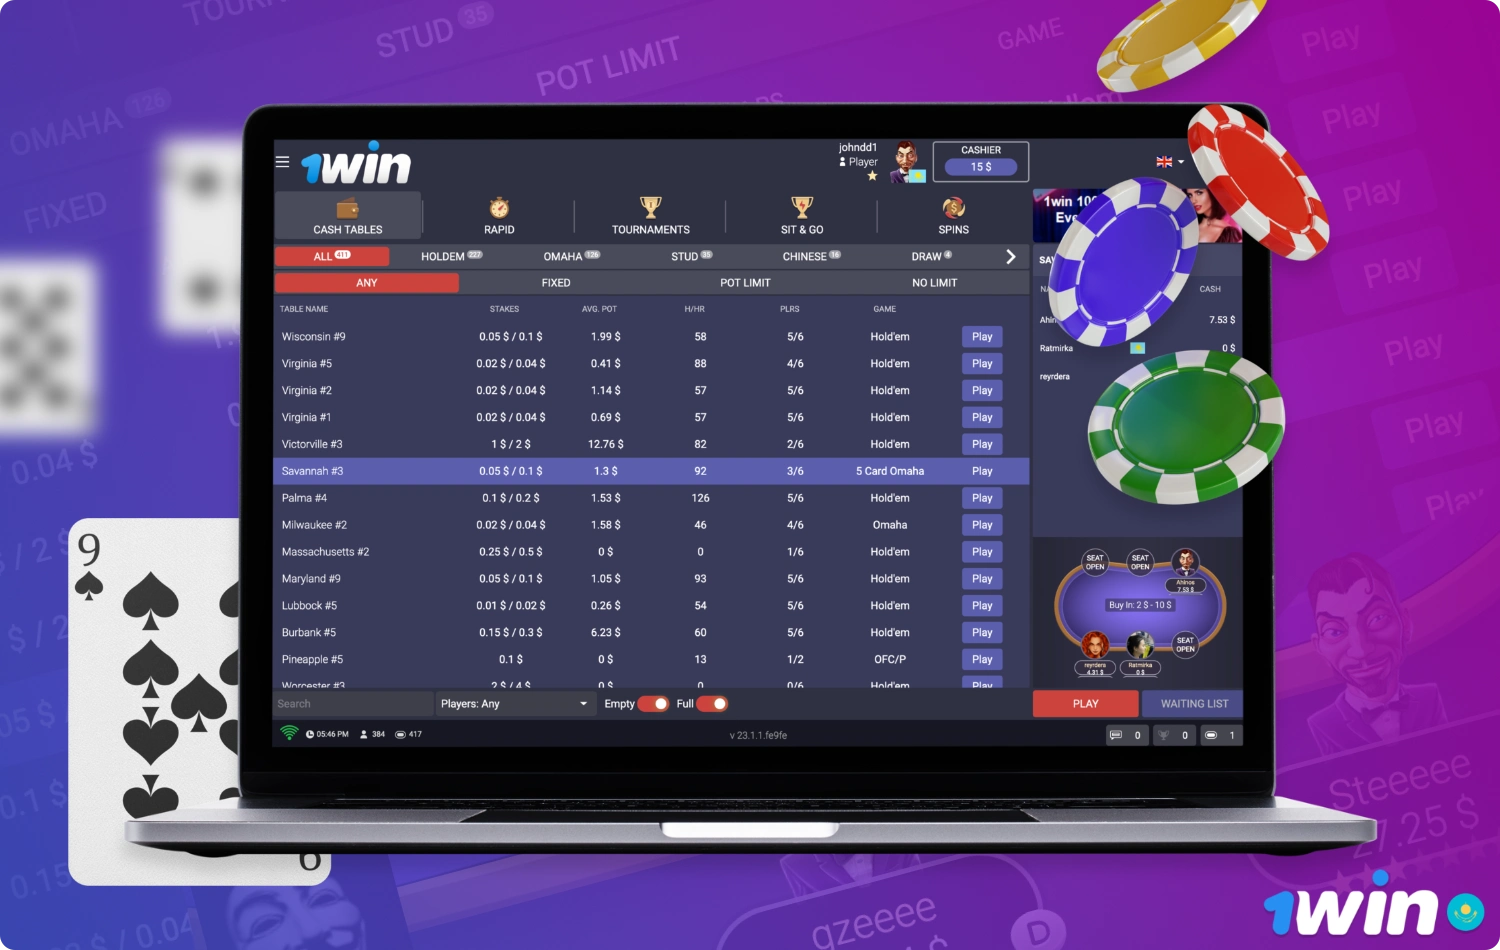 1win может компенсировать до 50% проигрышей за покерными столами